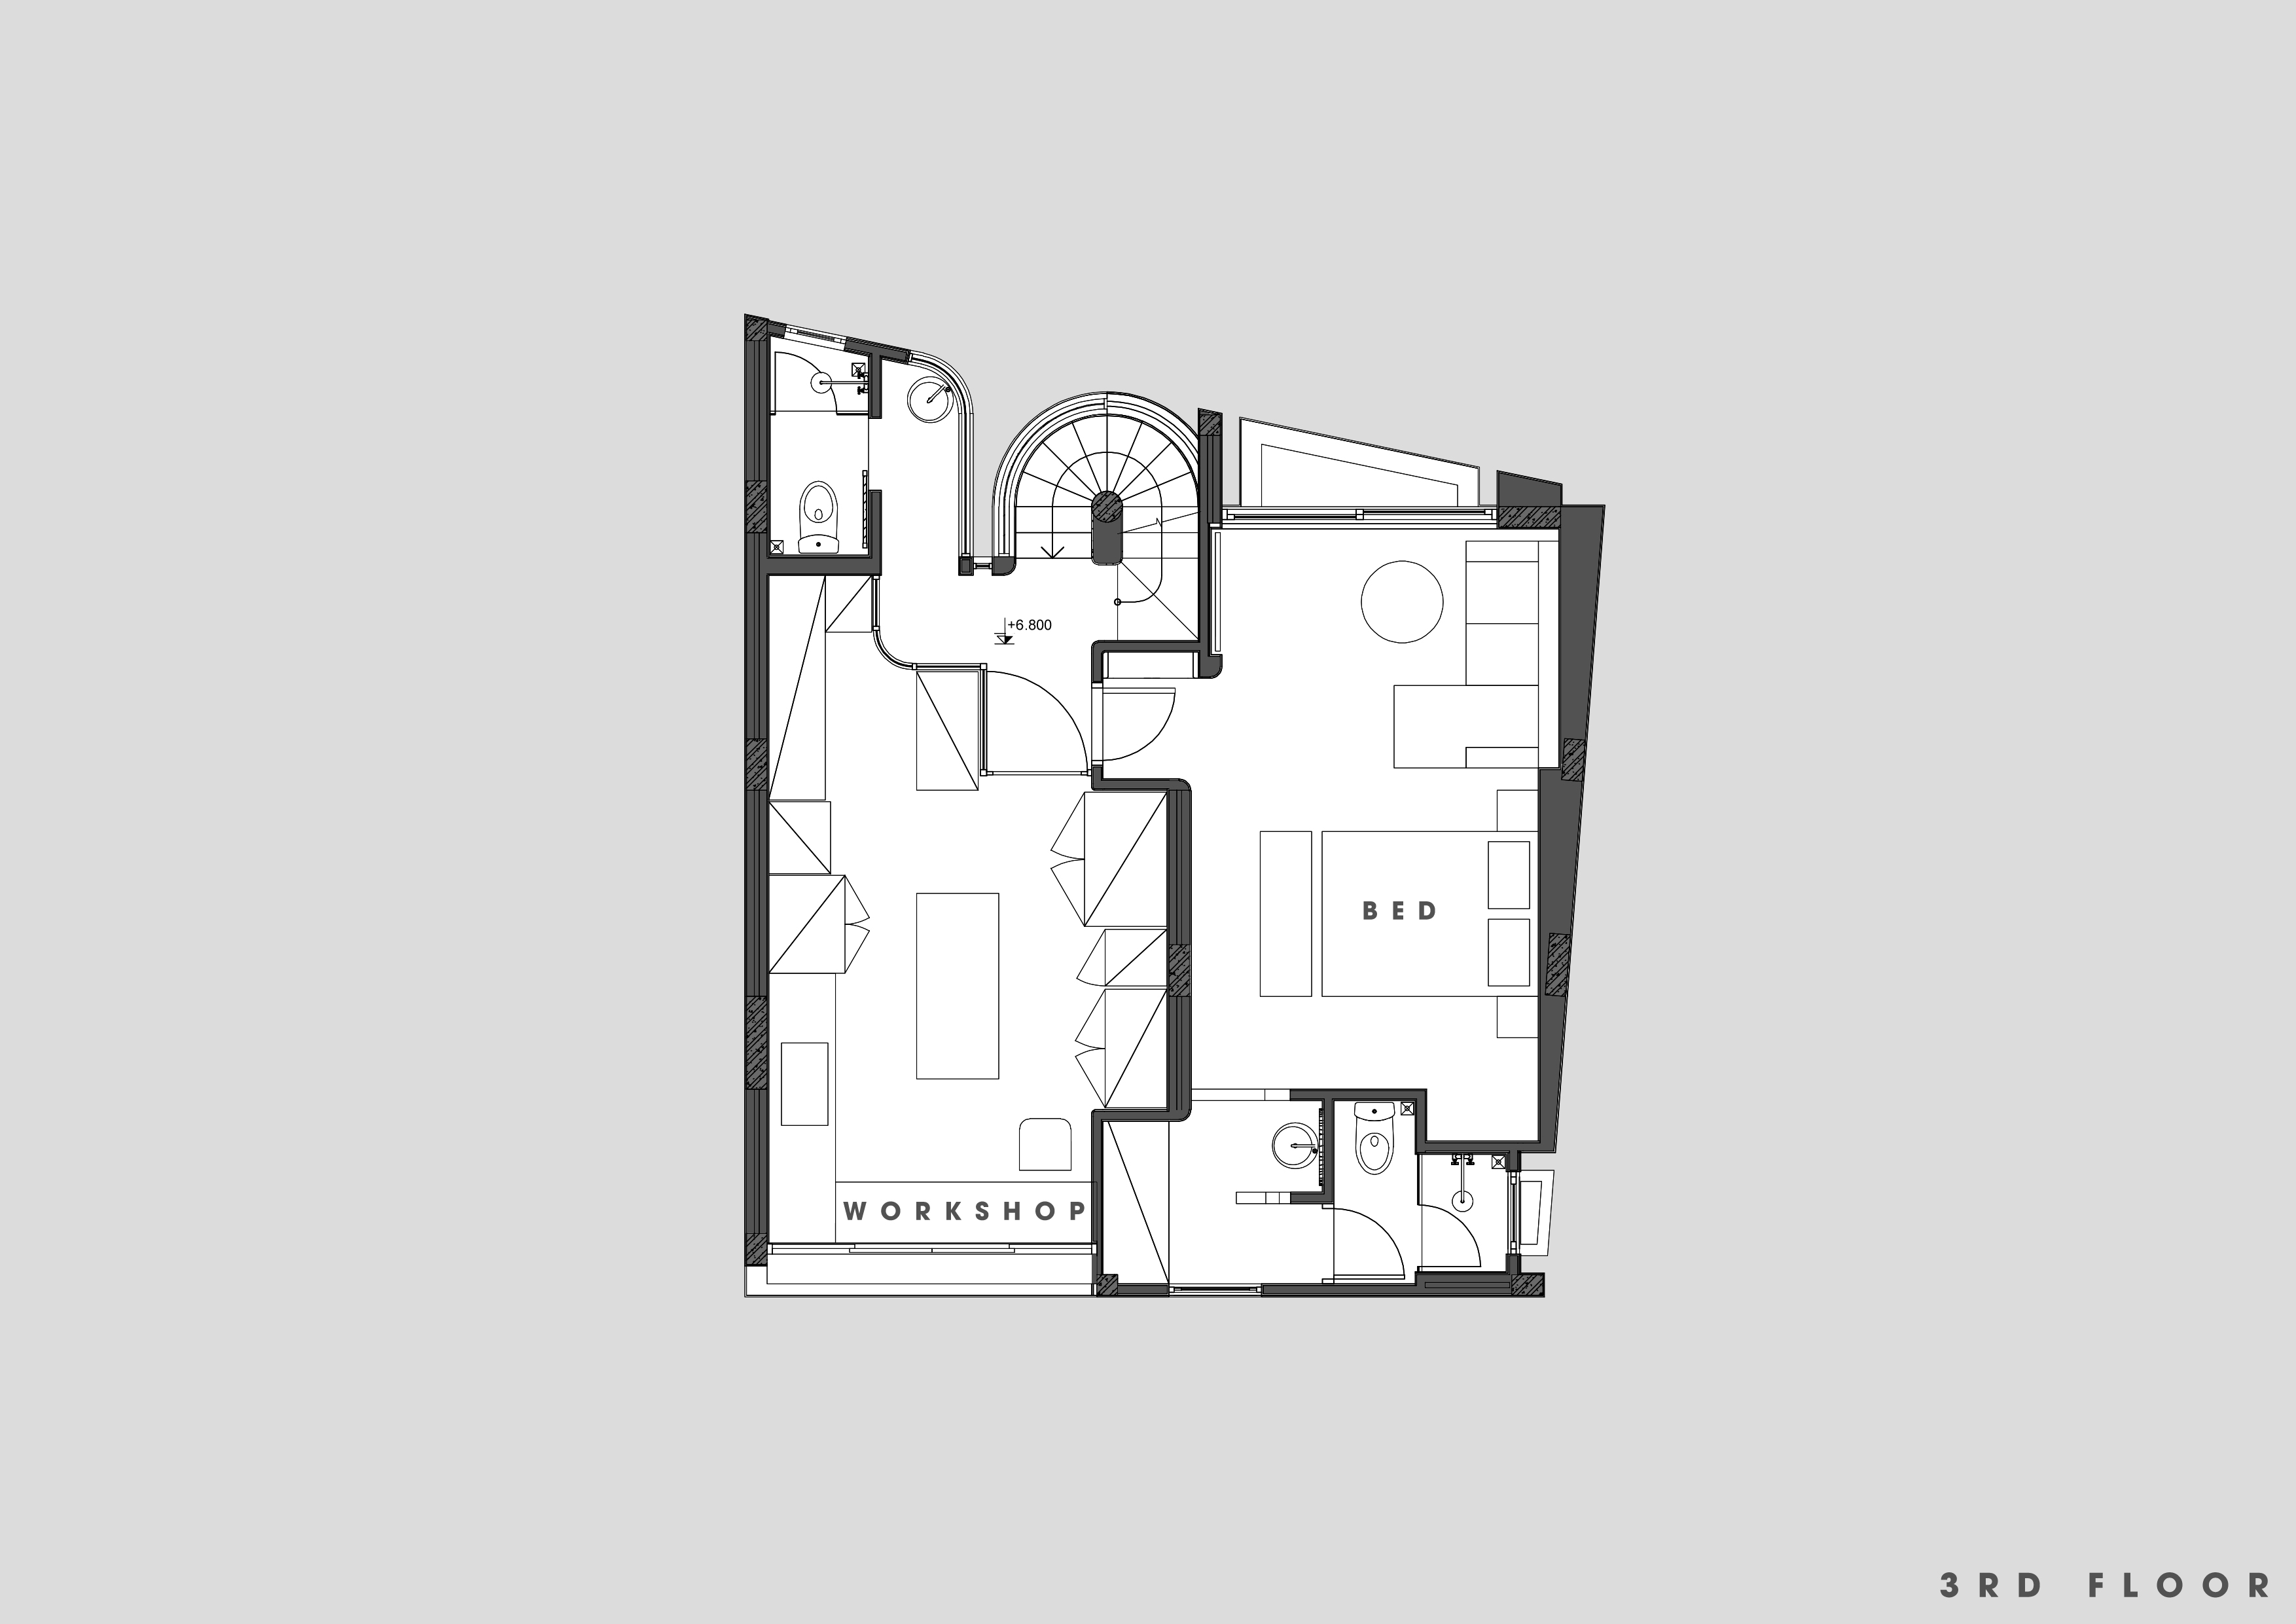 Third floor plan, source Hinzstudio